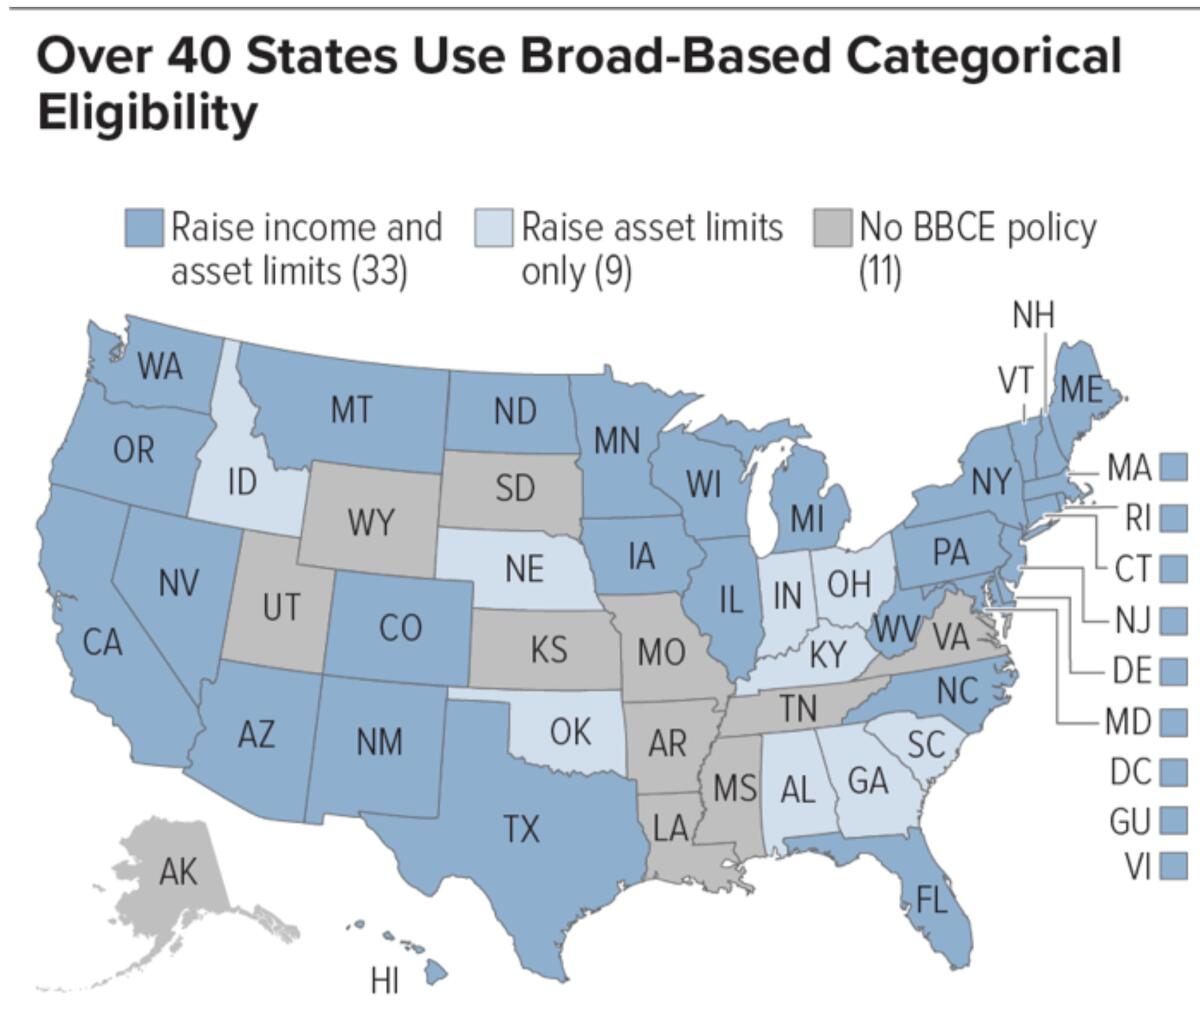 Más de 40 estados usan una elegibilidad categórica de base amplia para aumentar los límites de ingresos y activos para extender el ser elegibles a cupones de alimentos. Trump quiere eliminar la opción.